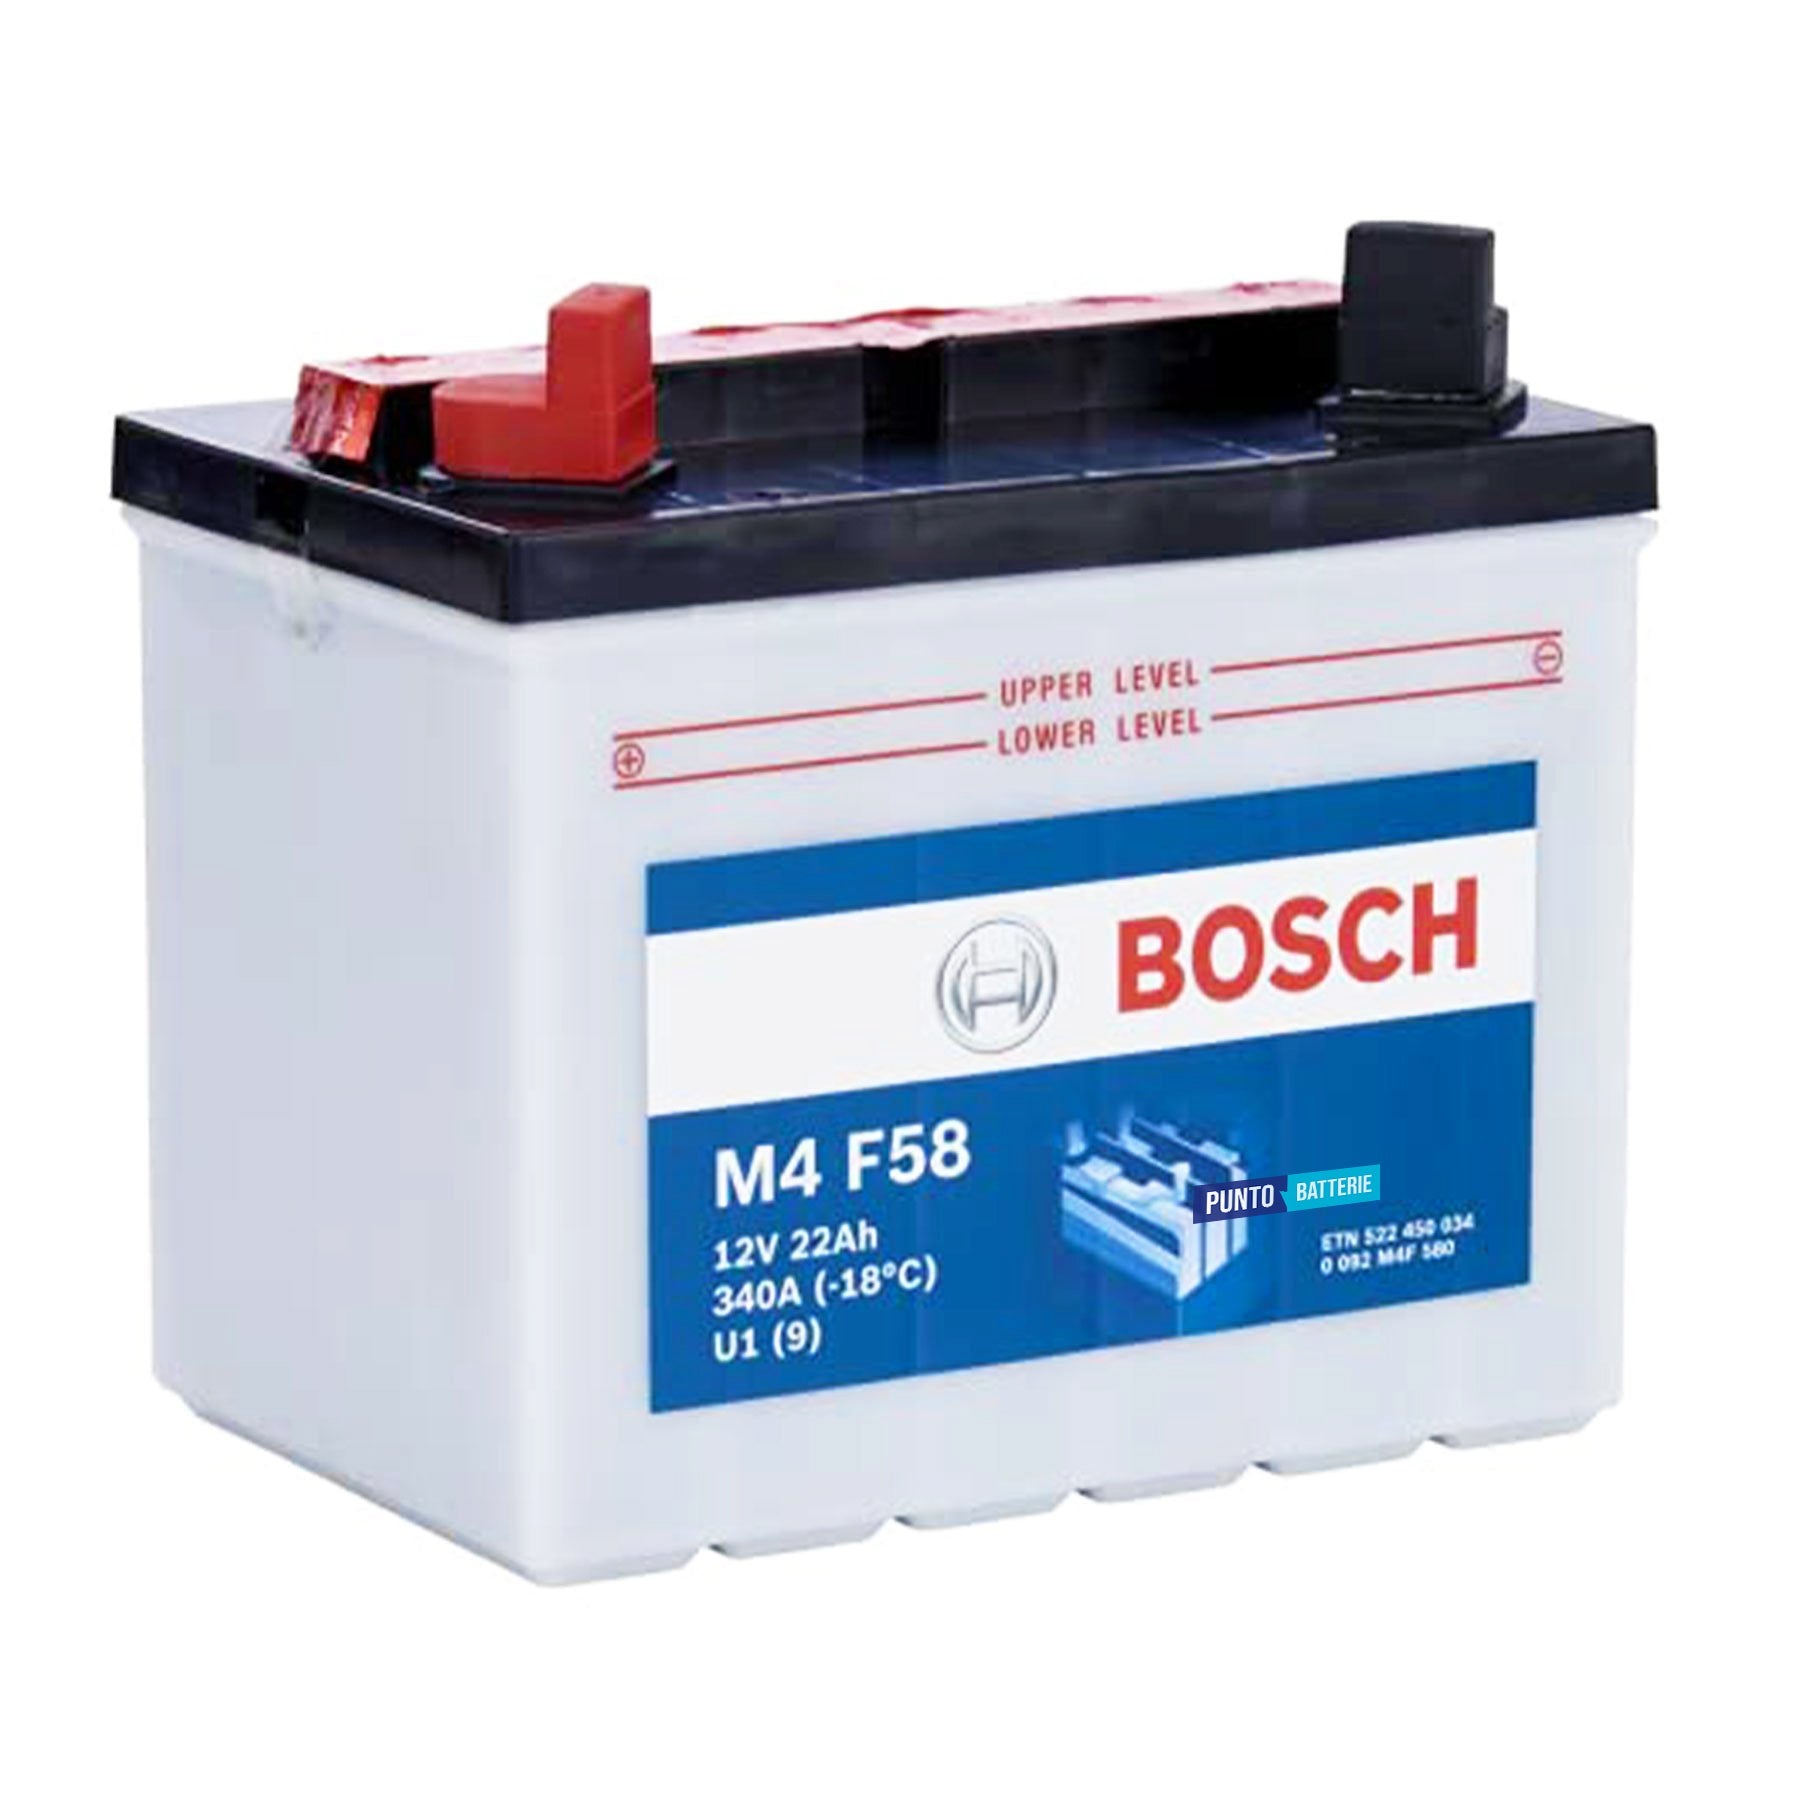 Batteria originale Bosch M4 M4F58, dimensioni 195 x 130 x 180, polo positivo a sinistra, 12 volt, 22 amperora, 340 ampere. Batteria per trattorino tagliaerba e rasaerba.